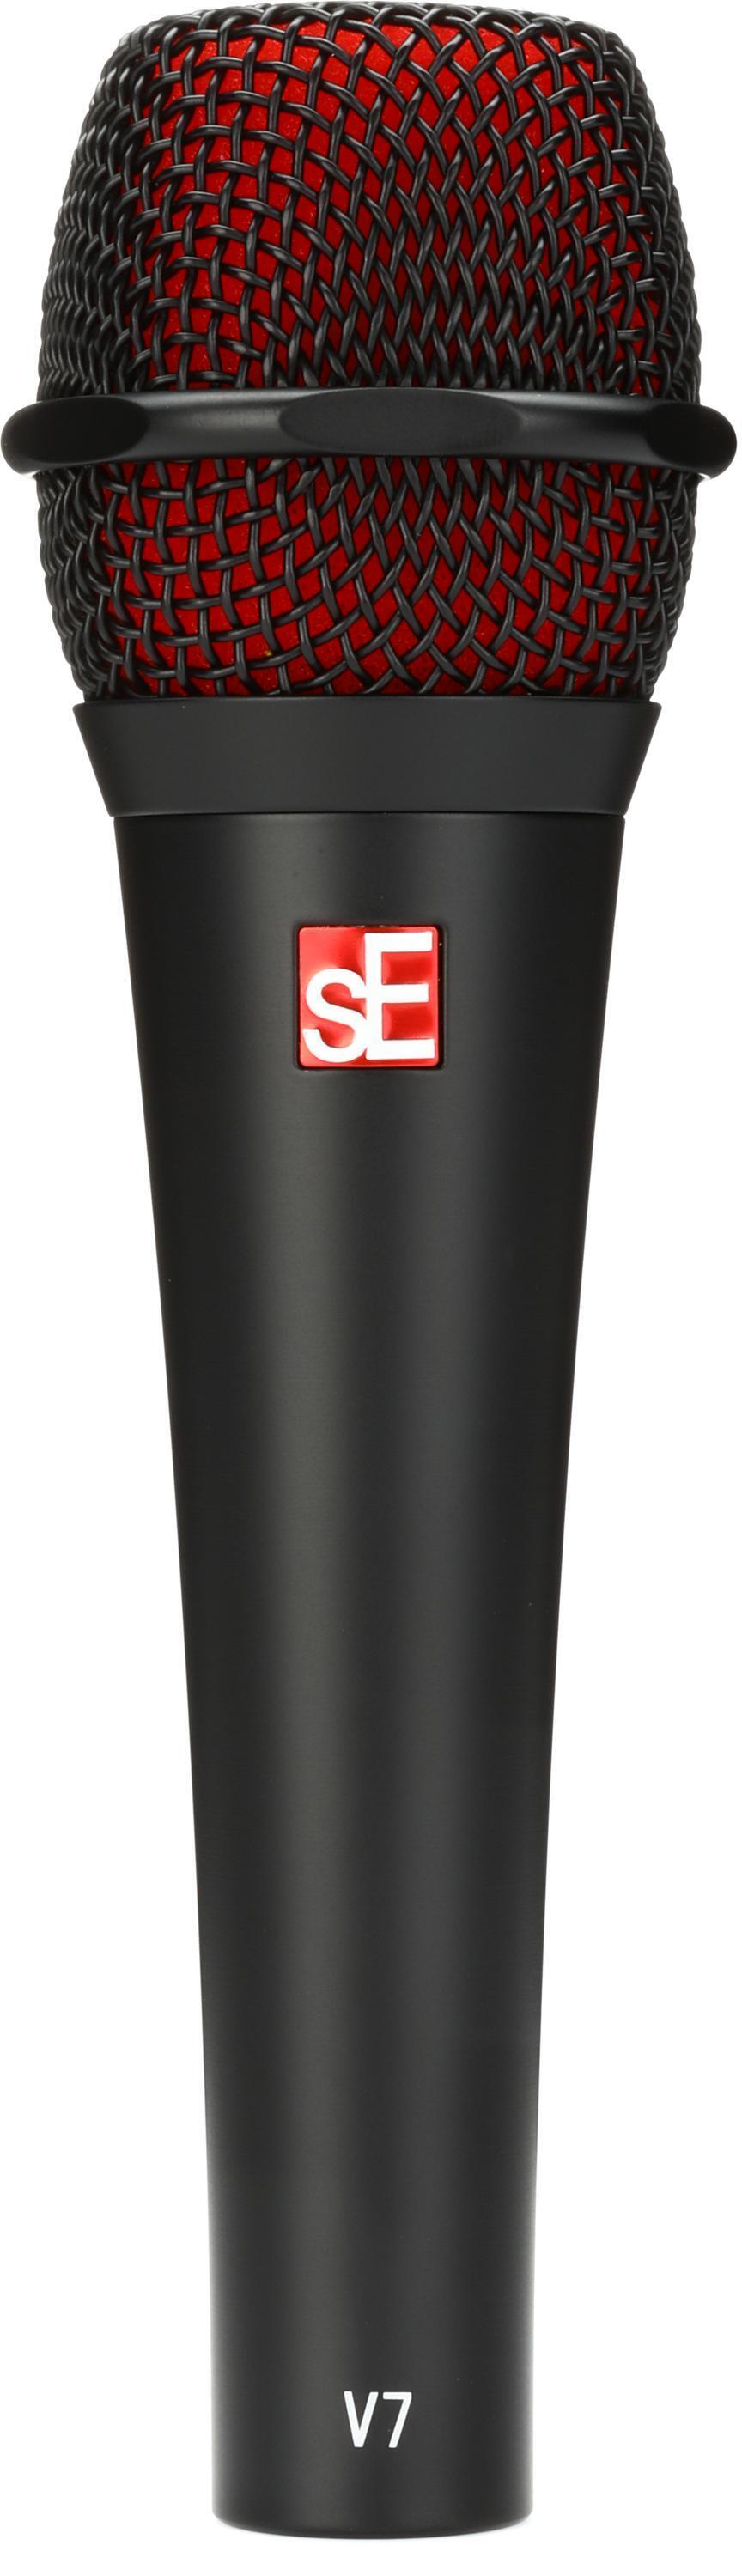 Bundled Item: sE Electronics V7 Supercardioid Dynamic Handheld Vocal Microphone - Black